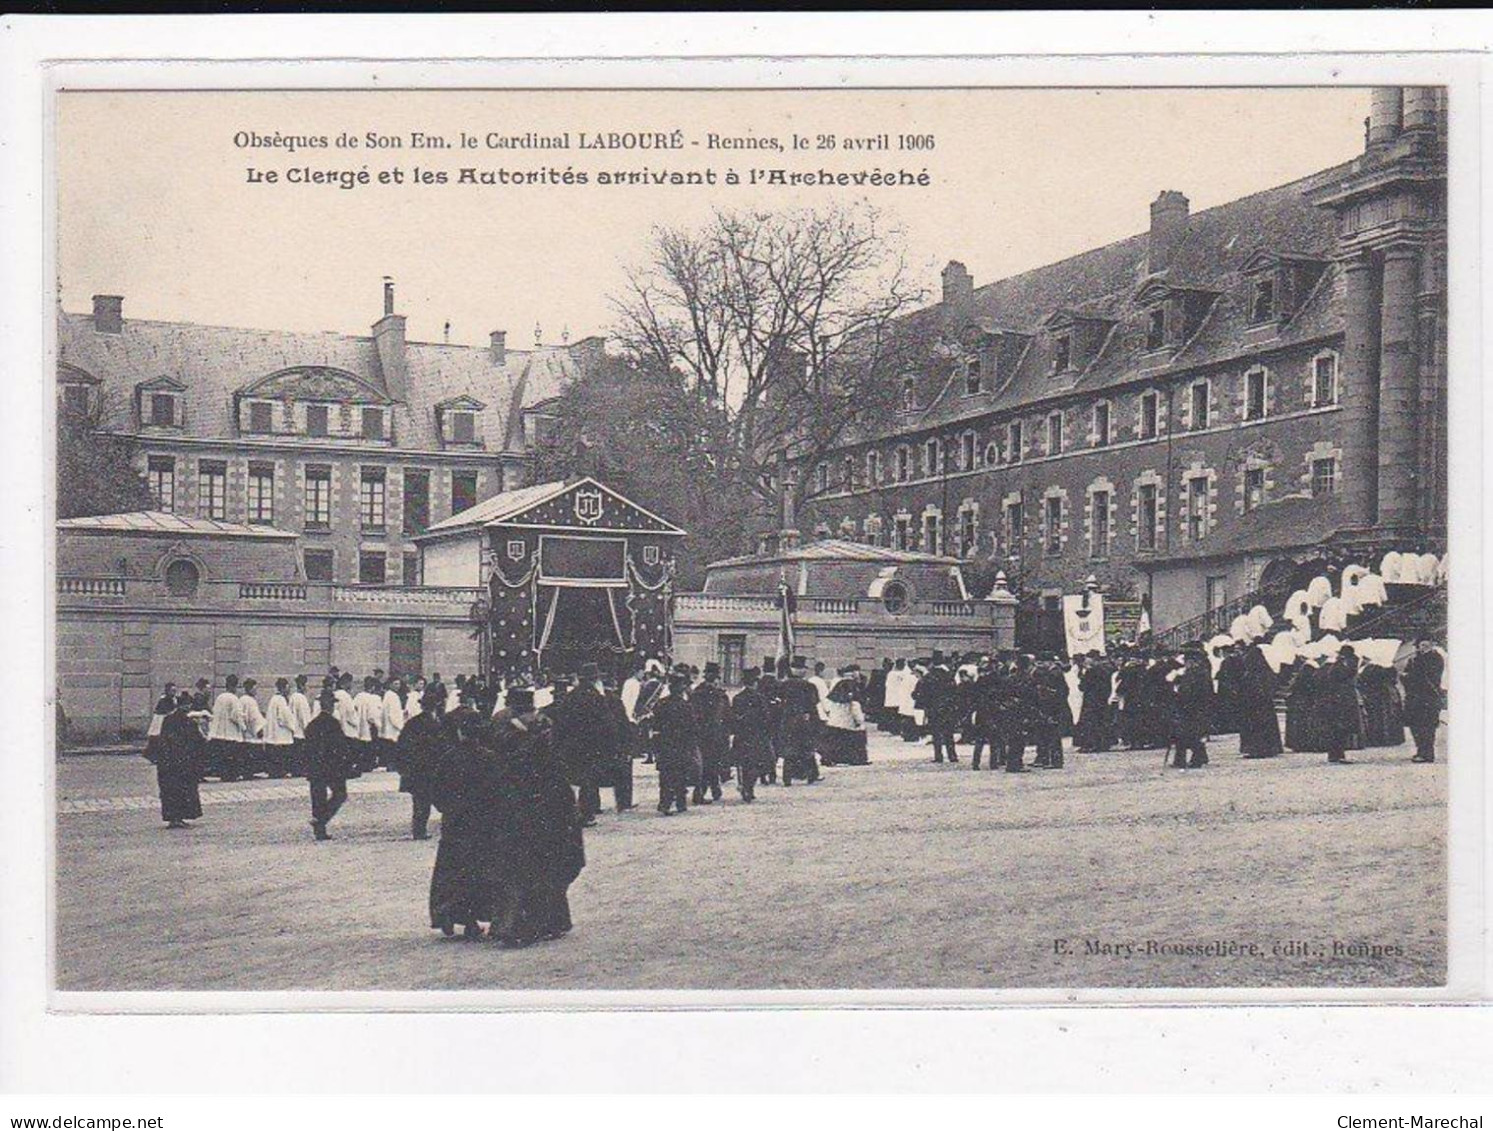 RENNES : Obsèques de Son éminence, le cardinal Labouré, 26 Avril 1906, Lot de 10 cartes postales - très bon état